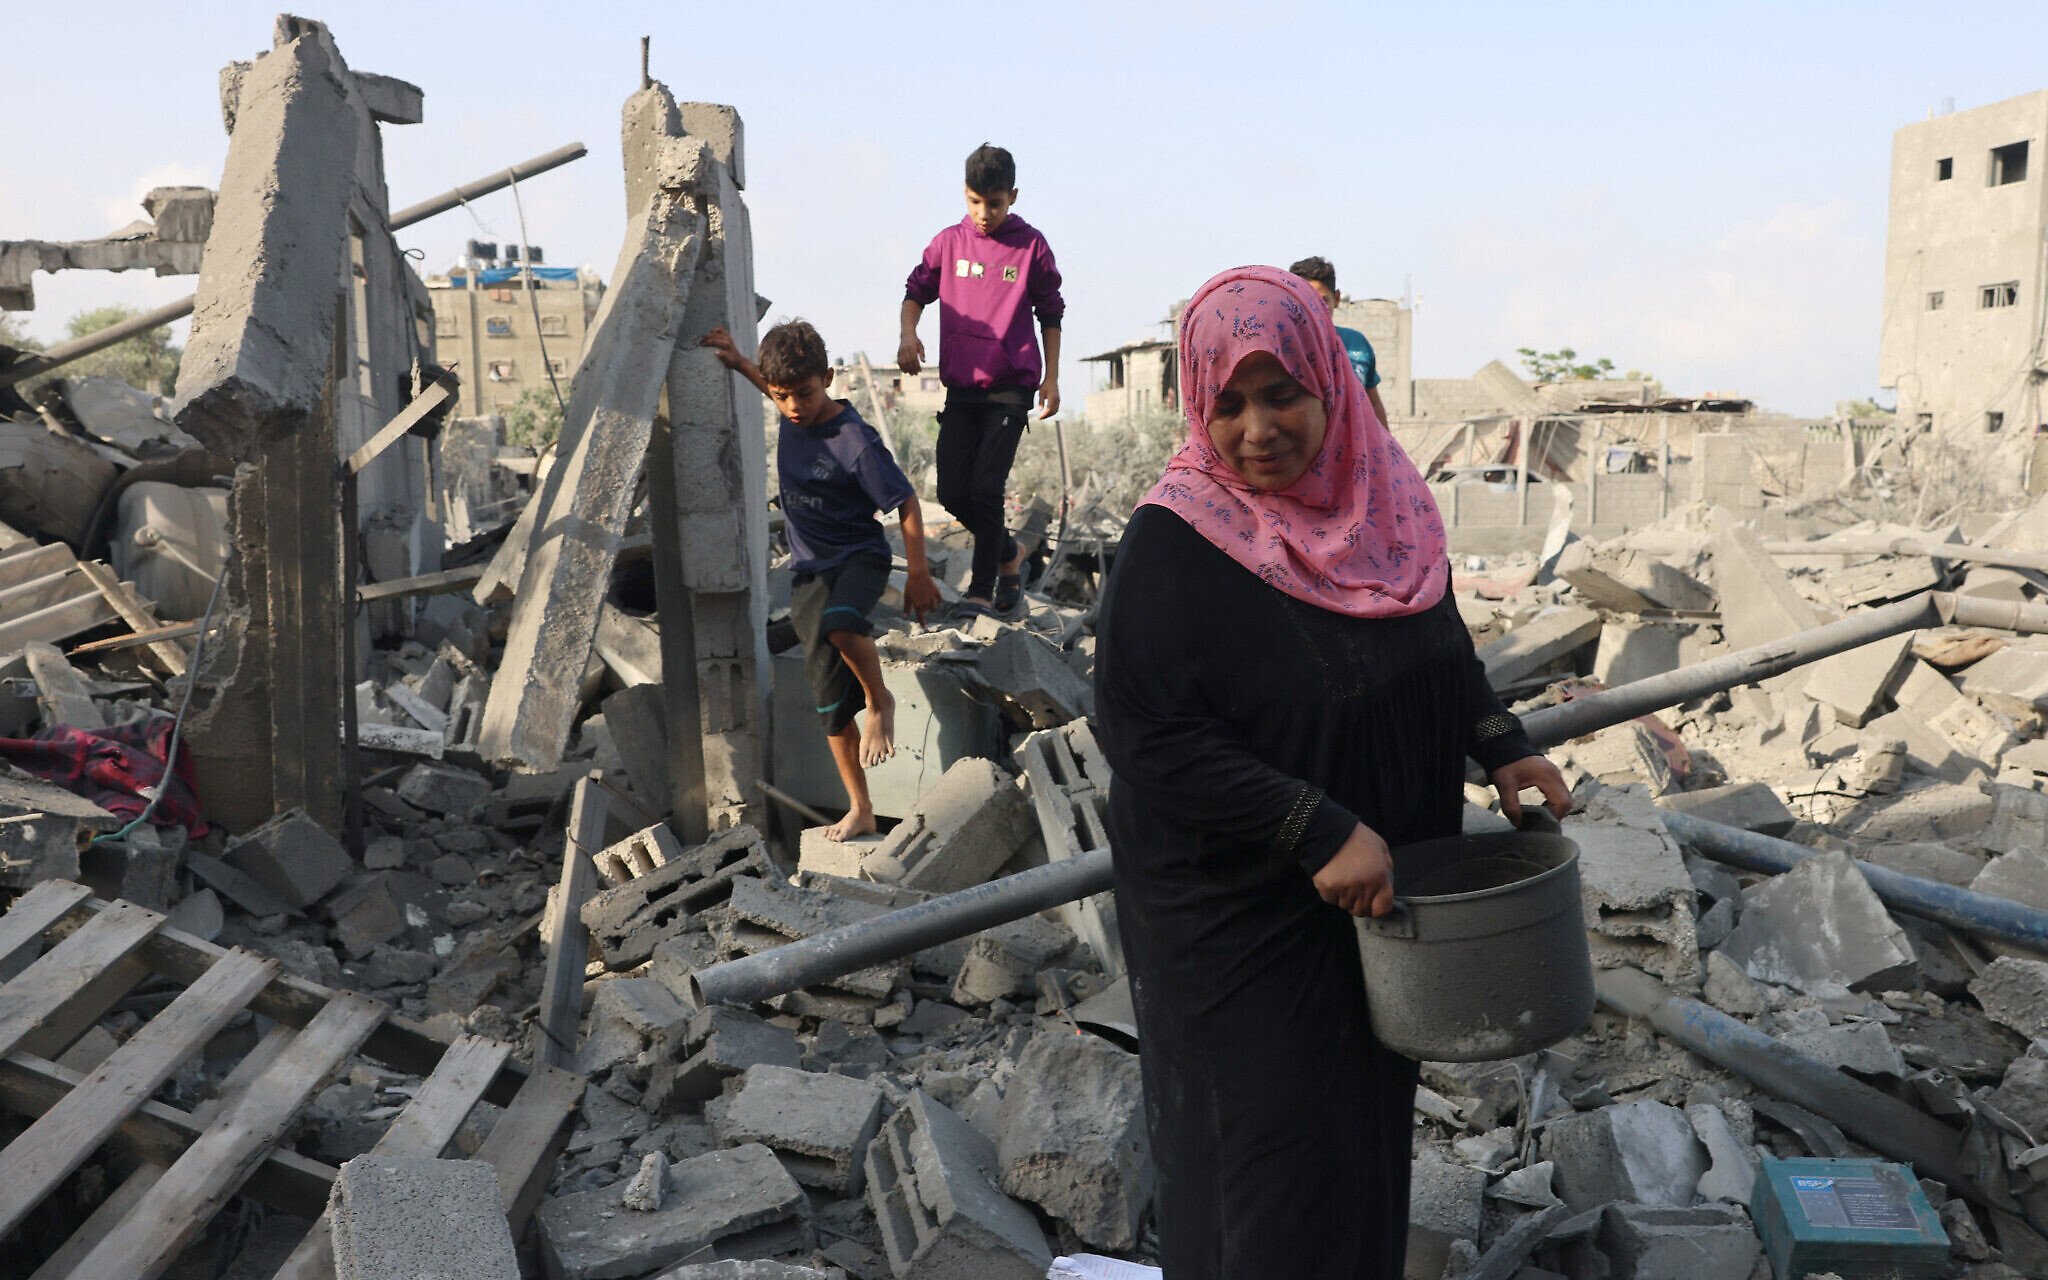 Birleşmiş Milletler (BM), Gazze Şeridi'nde 3 günlük yakıtın kaldığını bu durumun hastane ve fırınların çalışamamasına yol açacağını ifade etti.